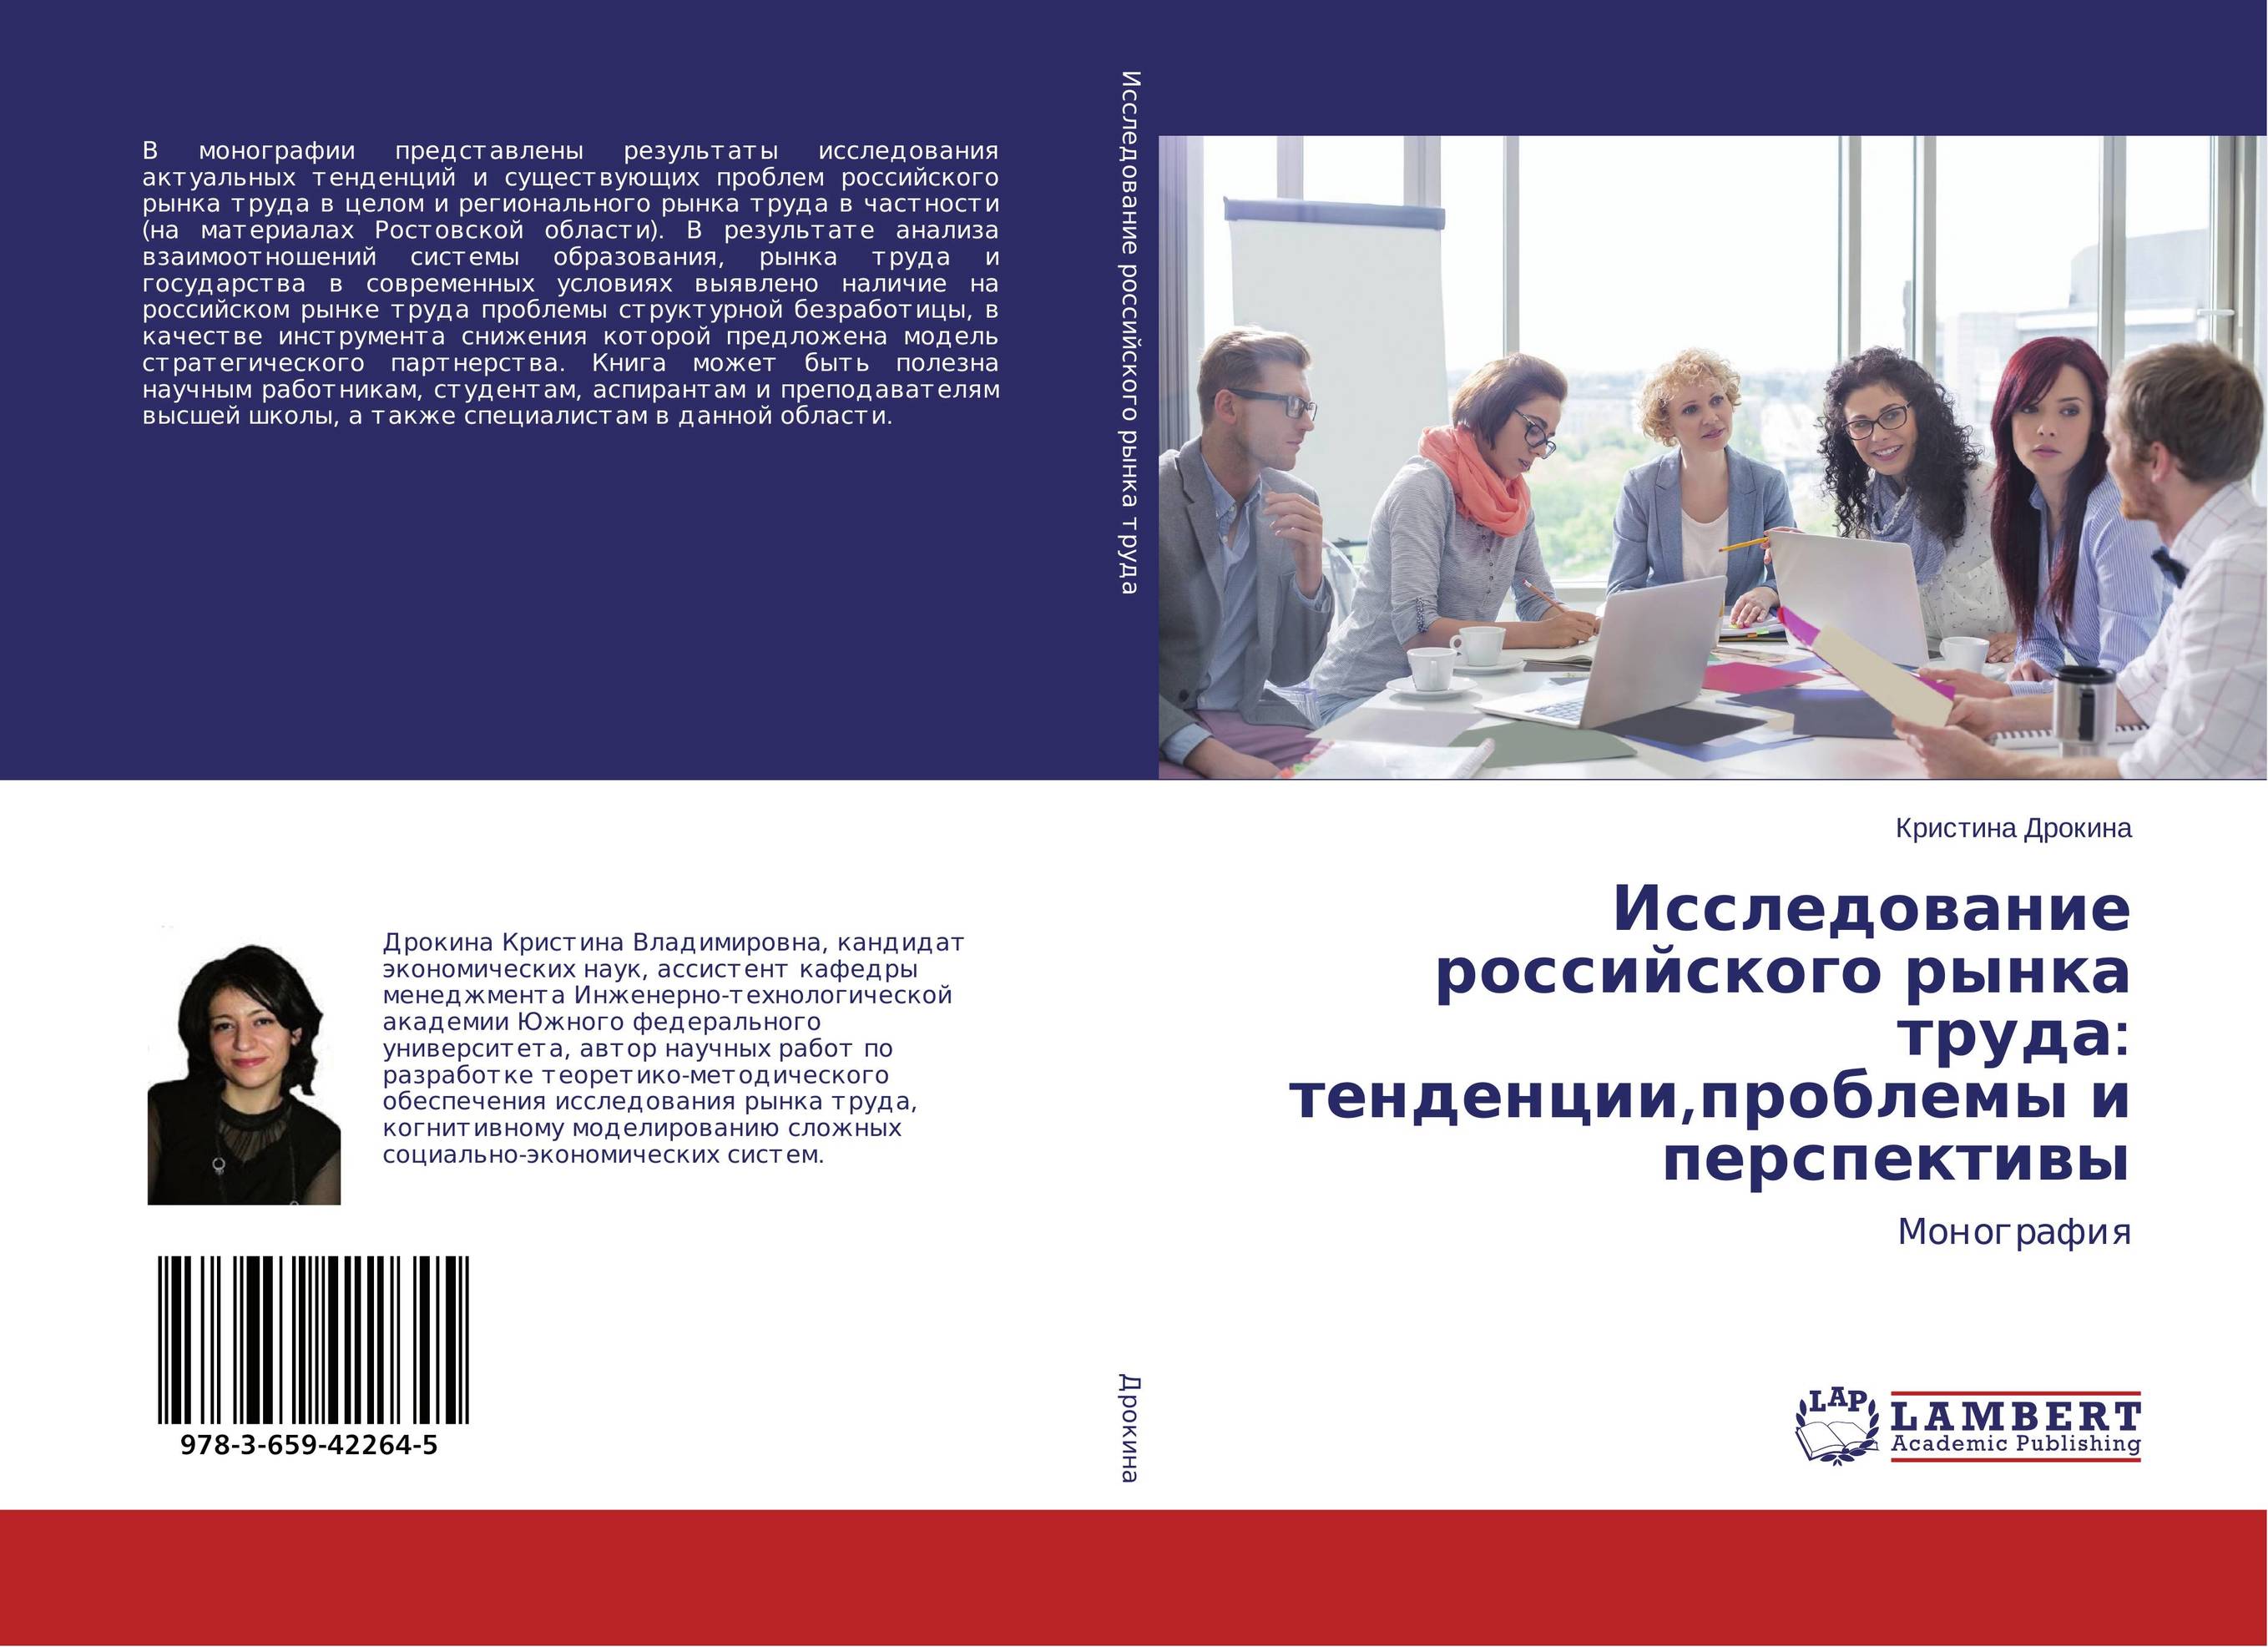 
        Исследование российского рынка труда: тенденции,проблемы и перспективы. Монография.
      